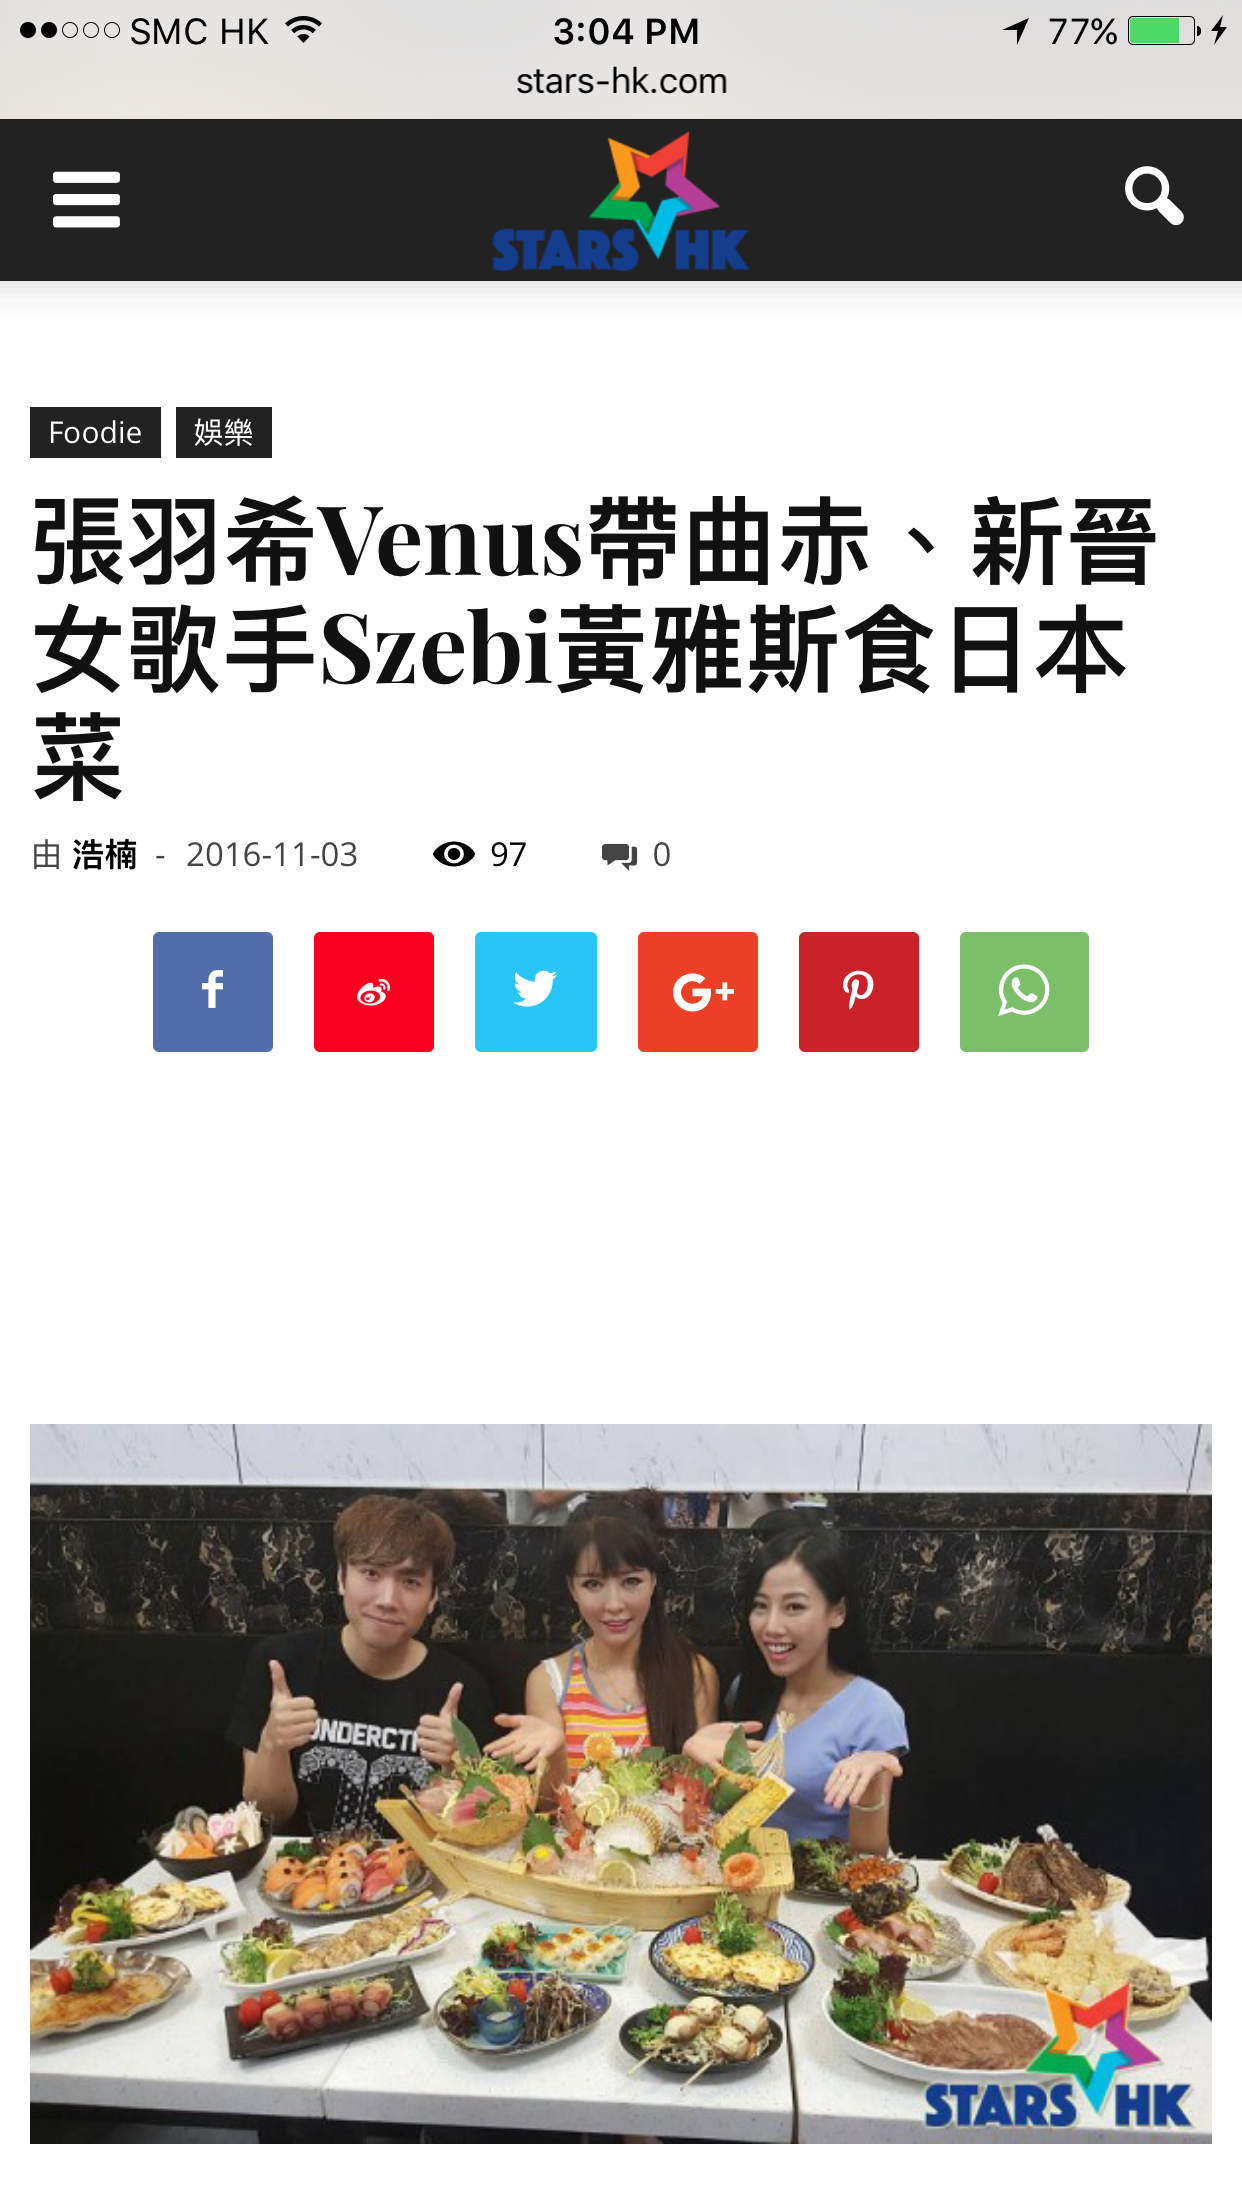 曲赤 K-CHEK 演藝人傳媒報導: 張羽希Venus帶曲赤、新晉女歌手Szebi黃雅斯食日本菜